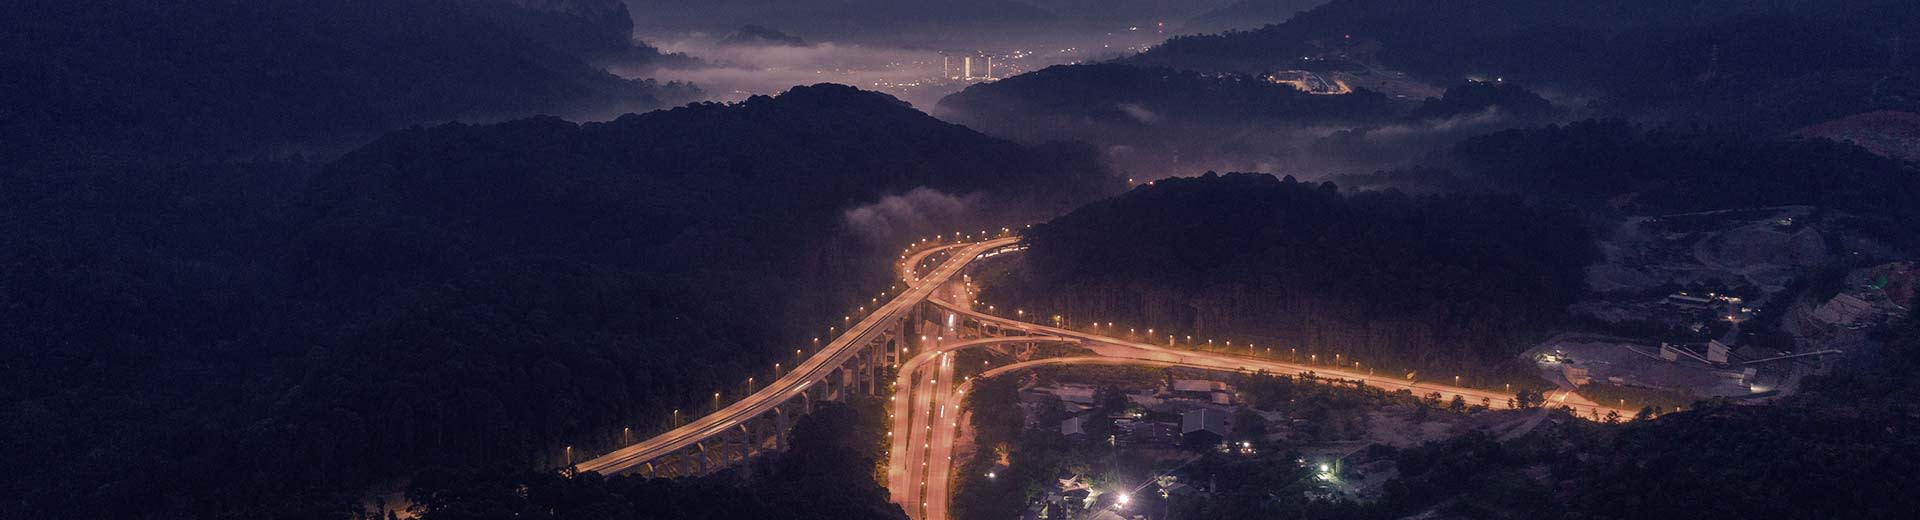 漆黑的山丘环绕着灯火通明的高速公路，远处是拉旺的灯光。